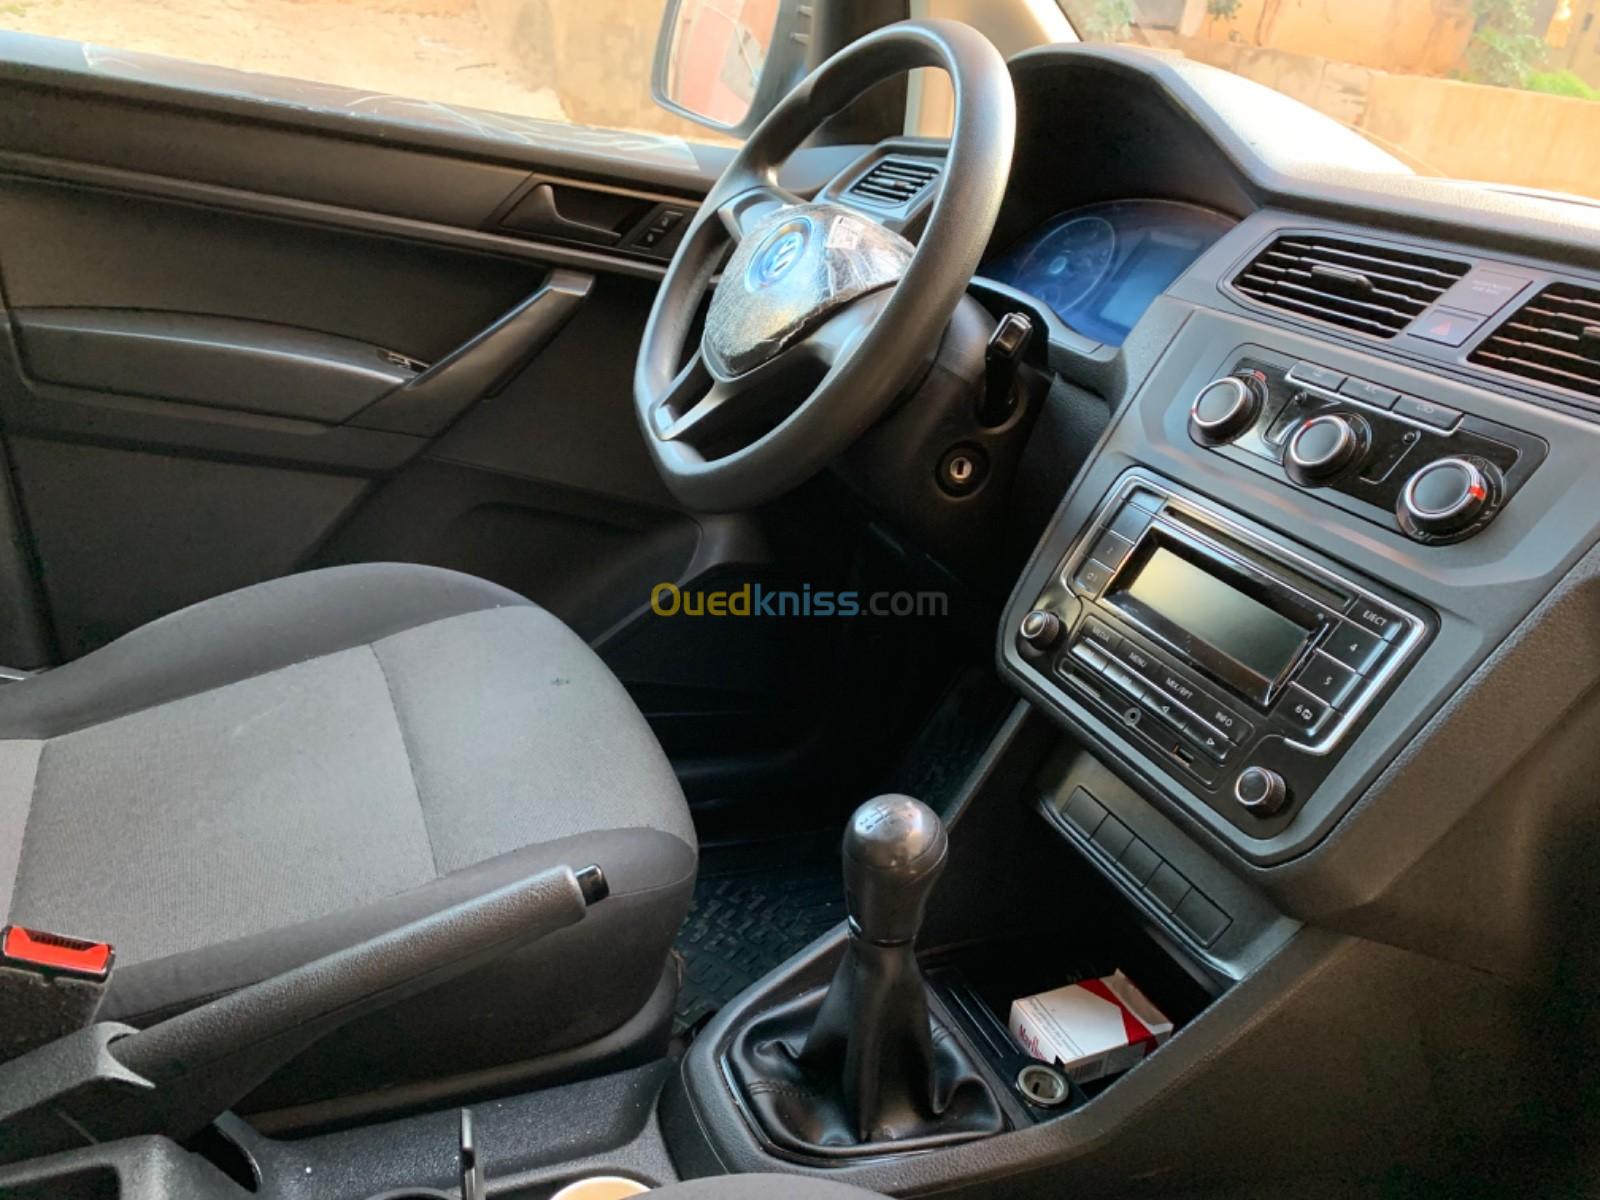 Volkswagen Caddy 2019 Business